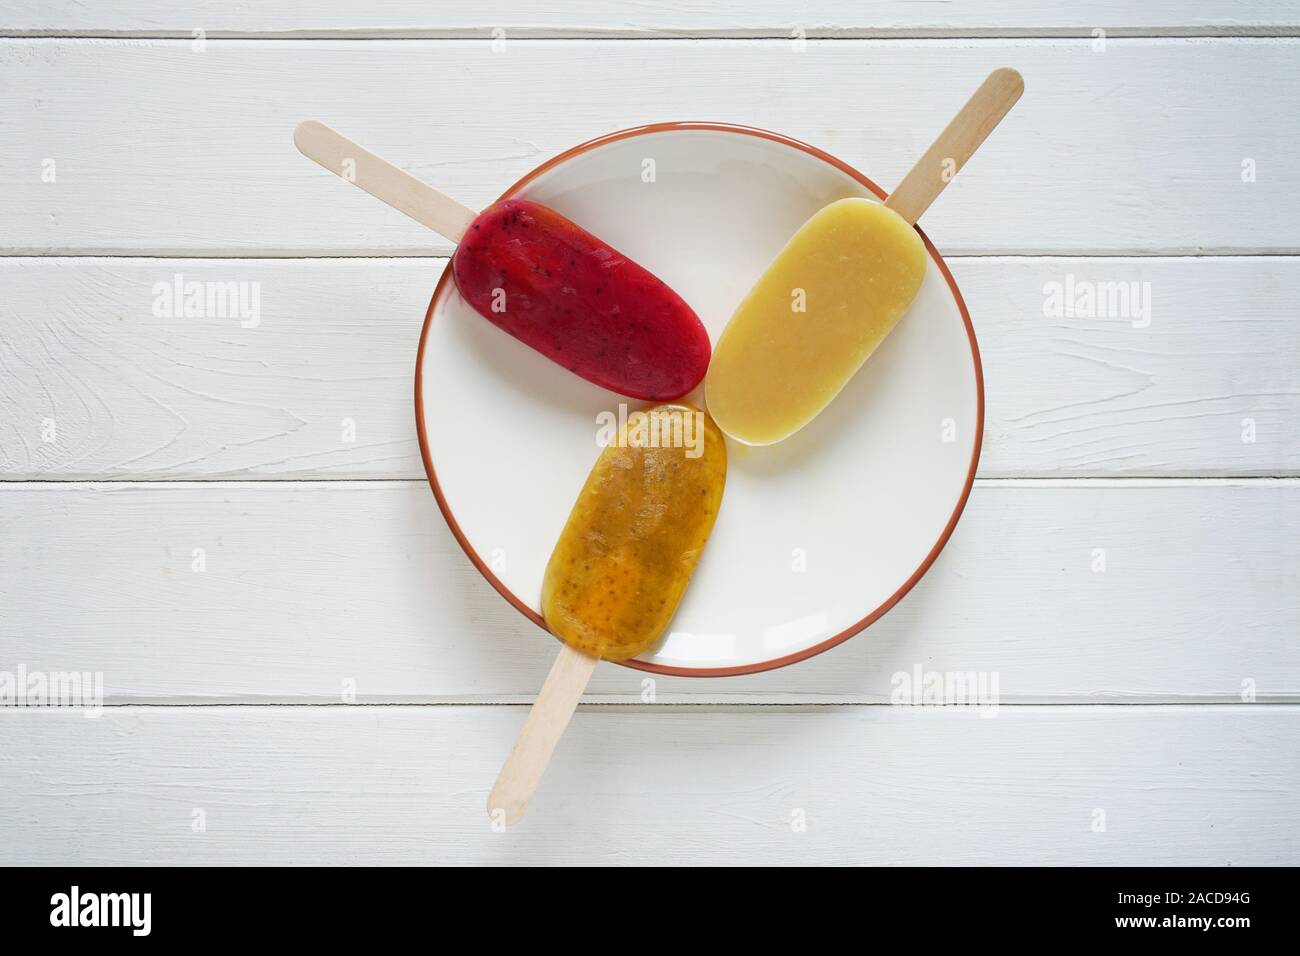 Vue de dessus de trois différentes sucettes glacées smoothie aux fruits ou glace pop sur une plaque sur fond de bois blanc Banque D'Images